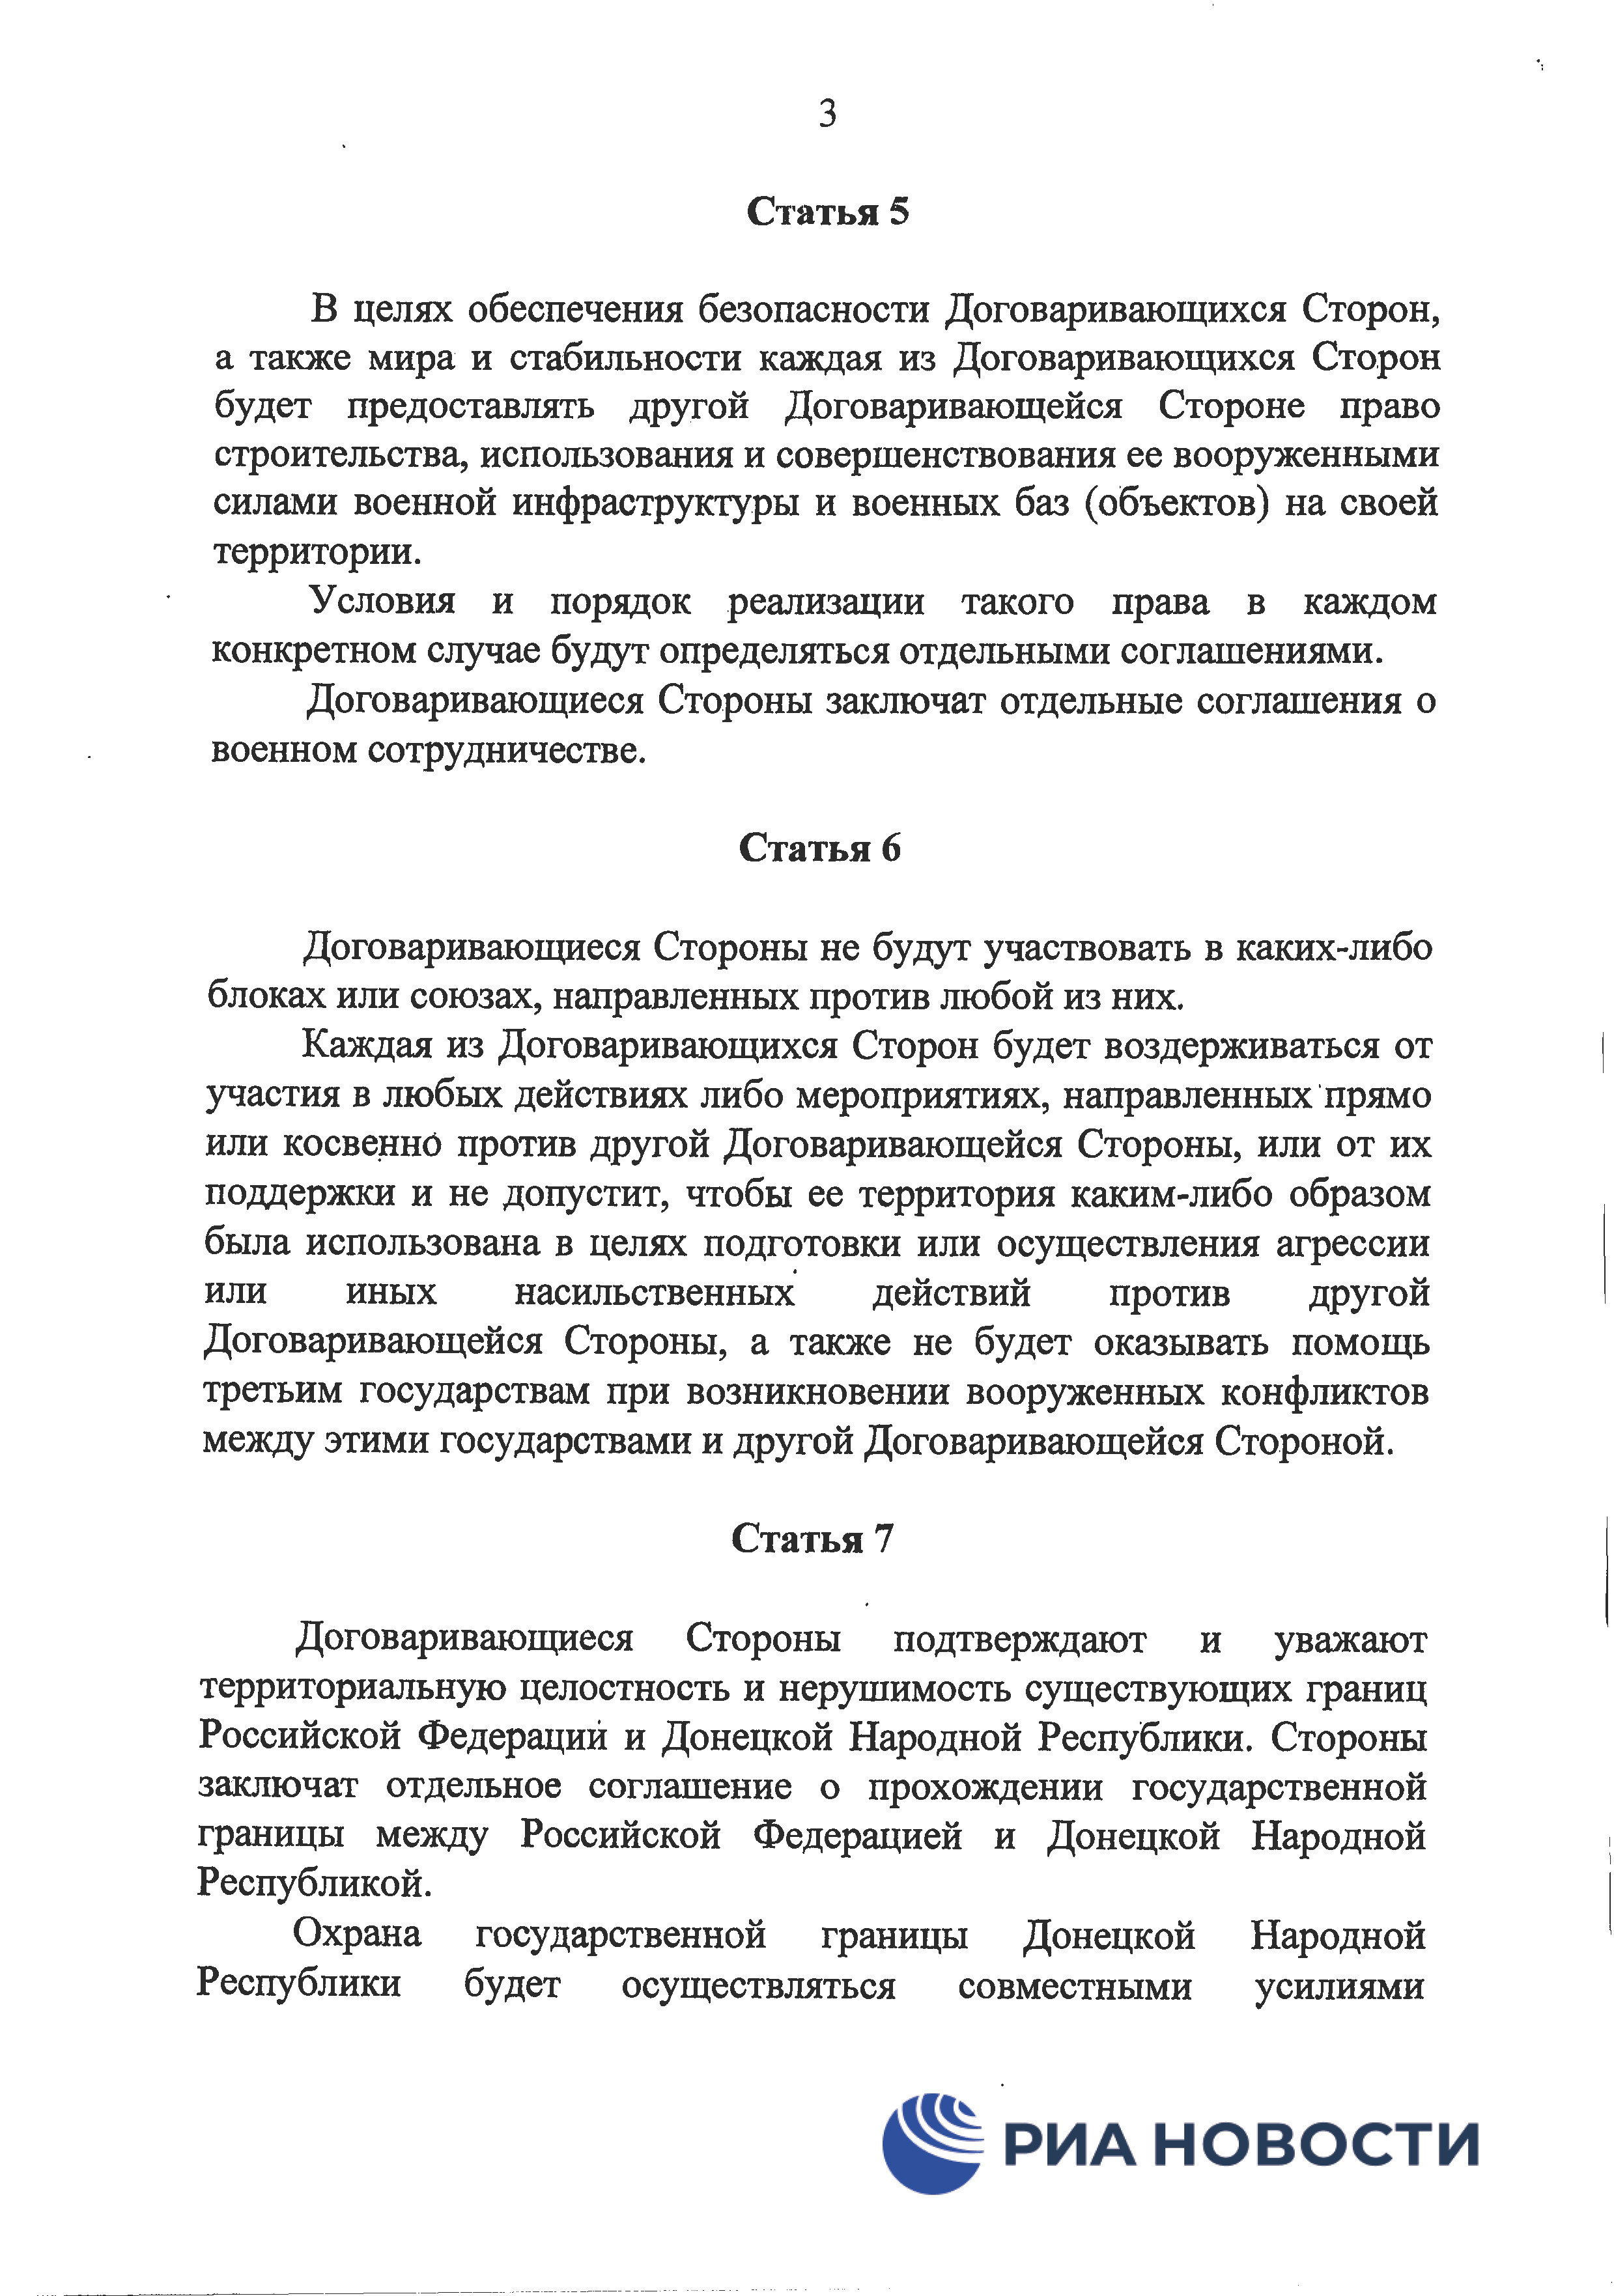 Договор о дружбе России с ДНР и ЛНР - страница 6